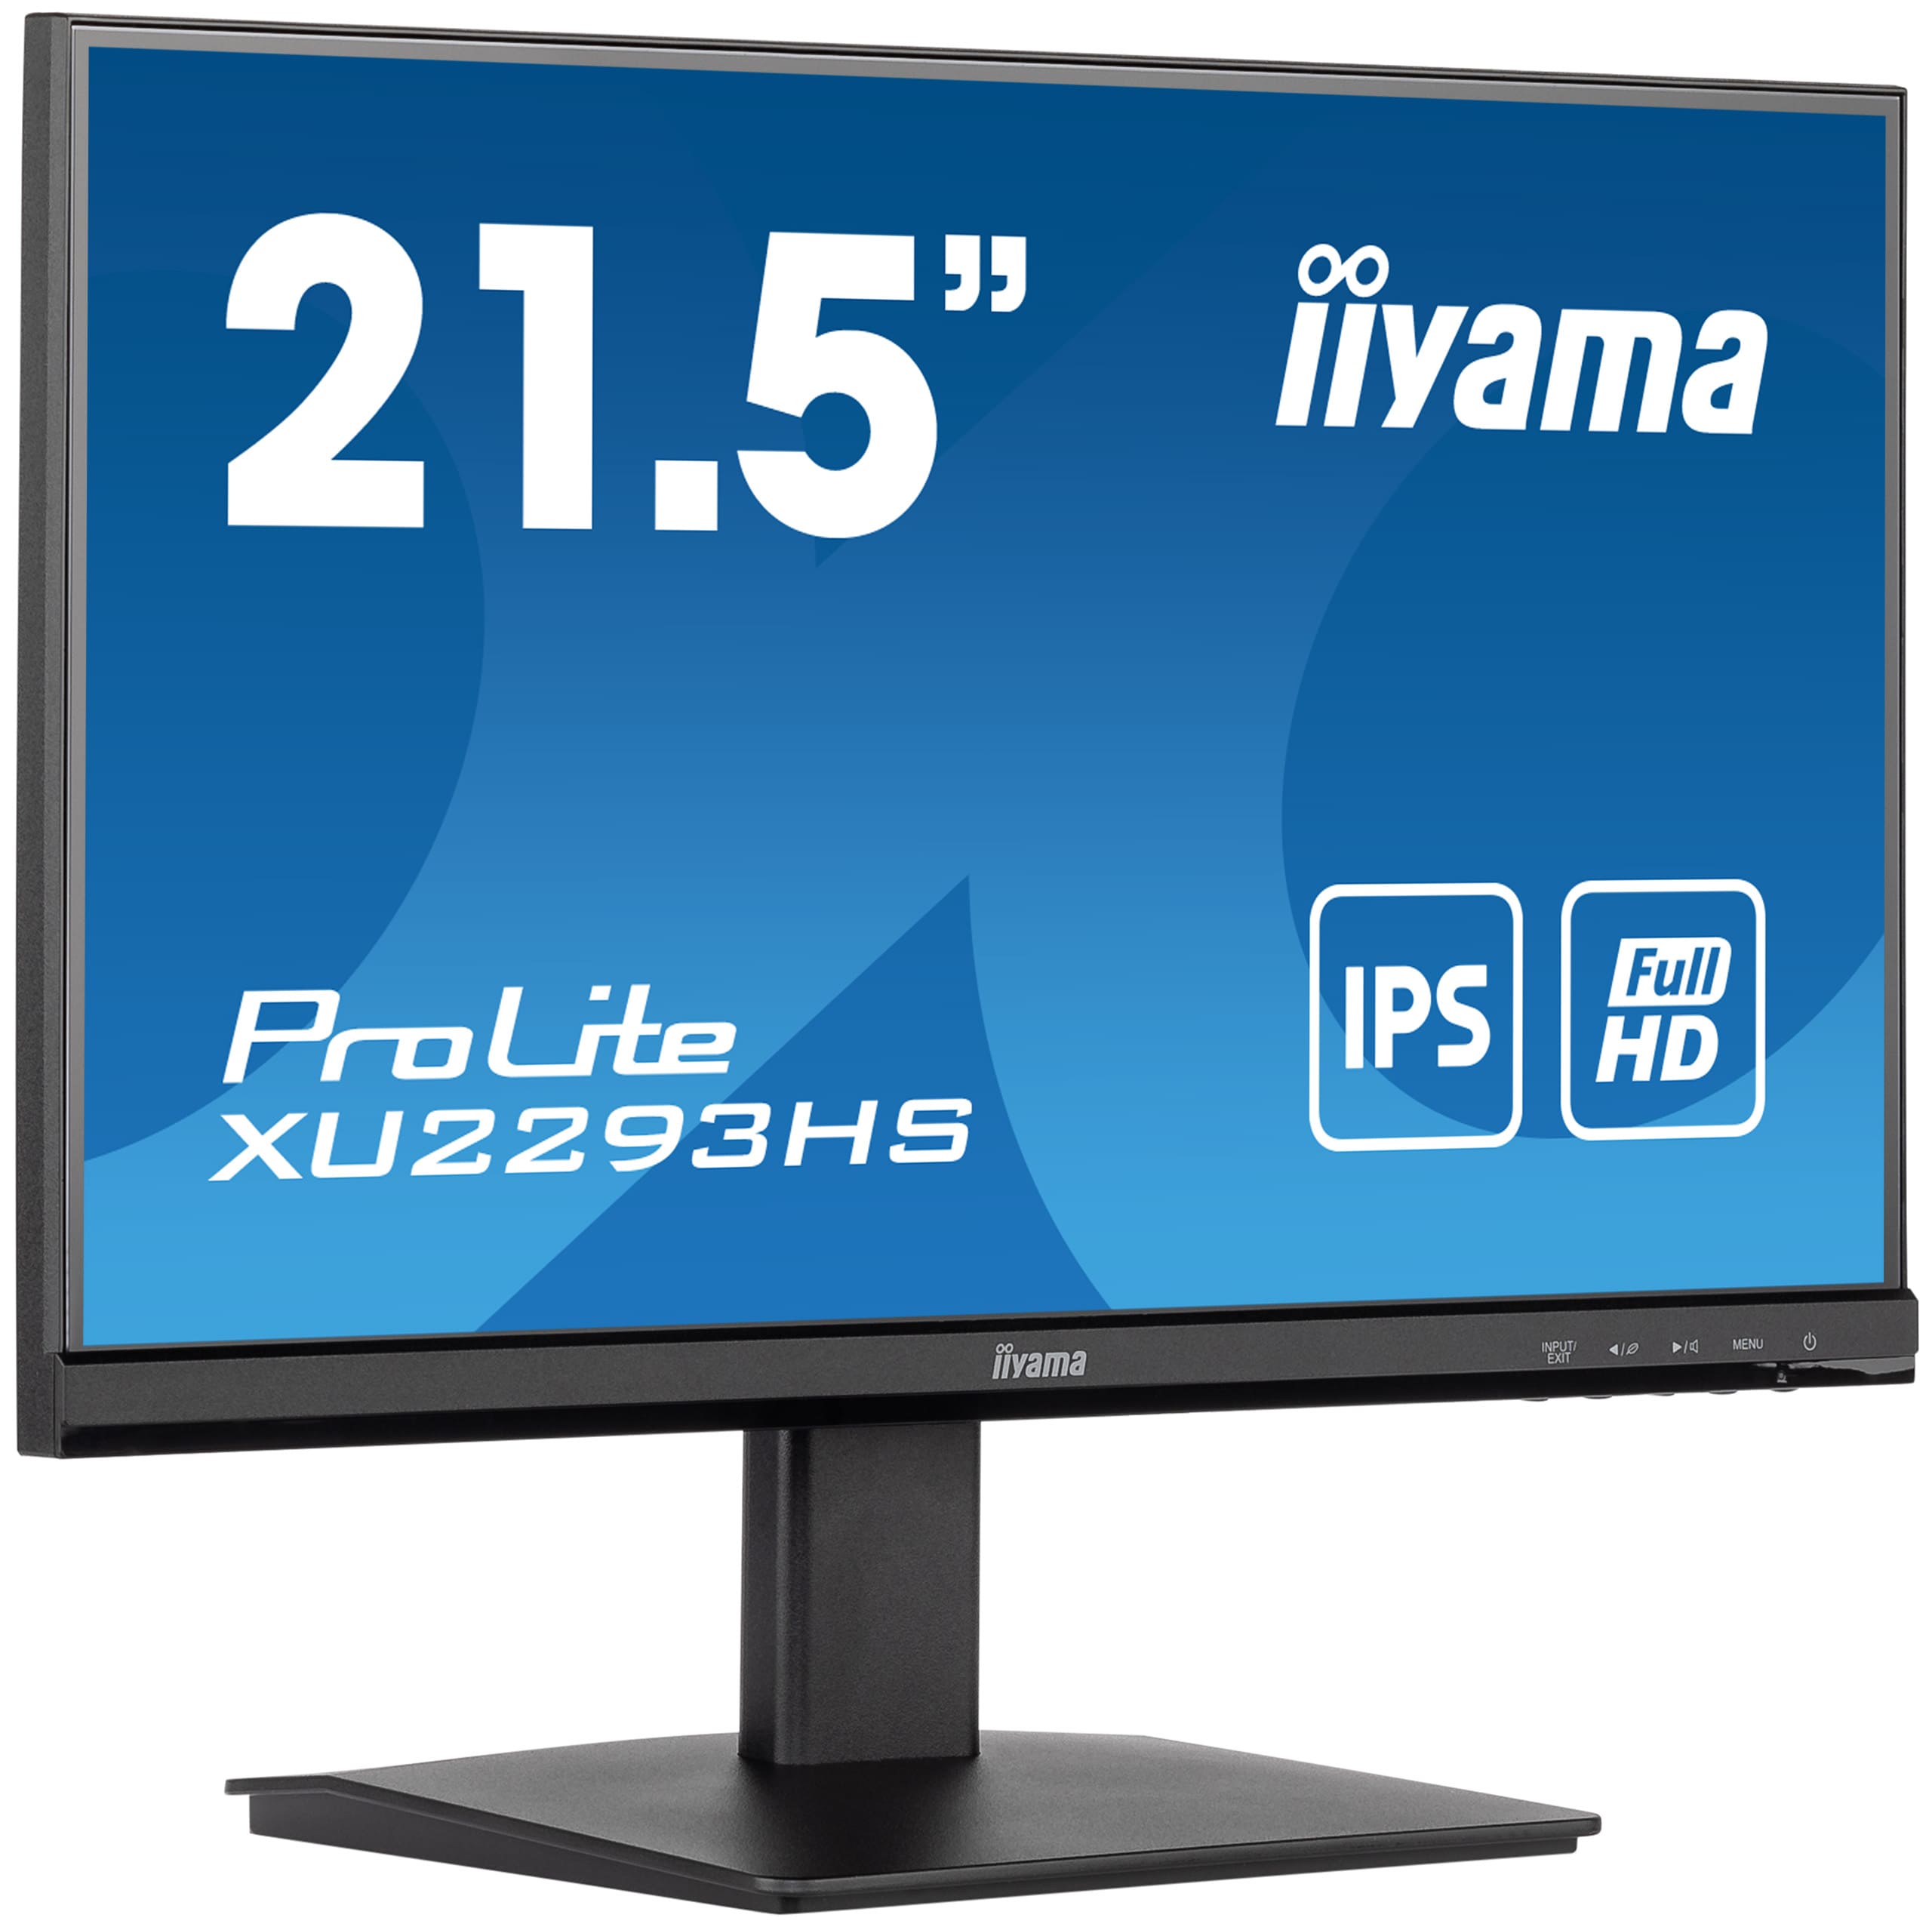 Iiyama ProLite XU2293HS-B5 | 21.5" (54.5 cm) | Monitor mit einem dreiseitig rahmenlosen Design für Multi-Monitor-Setups